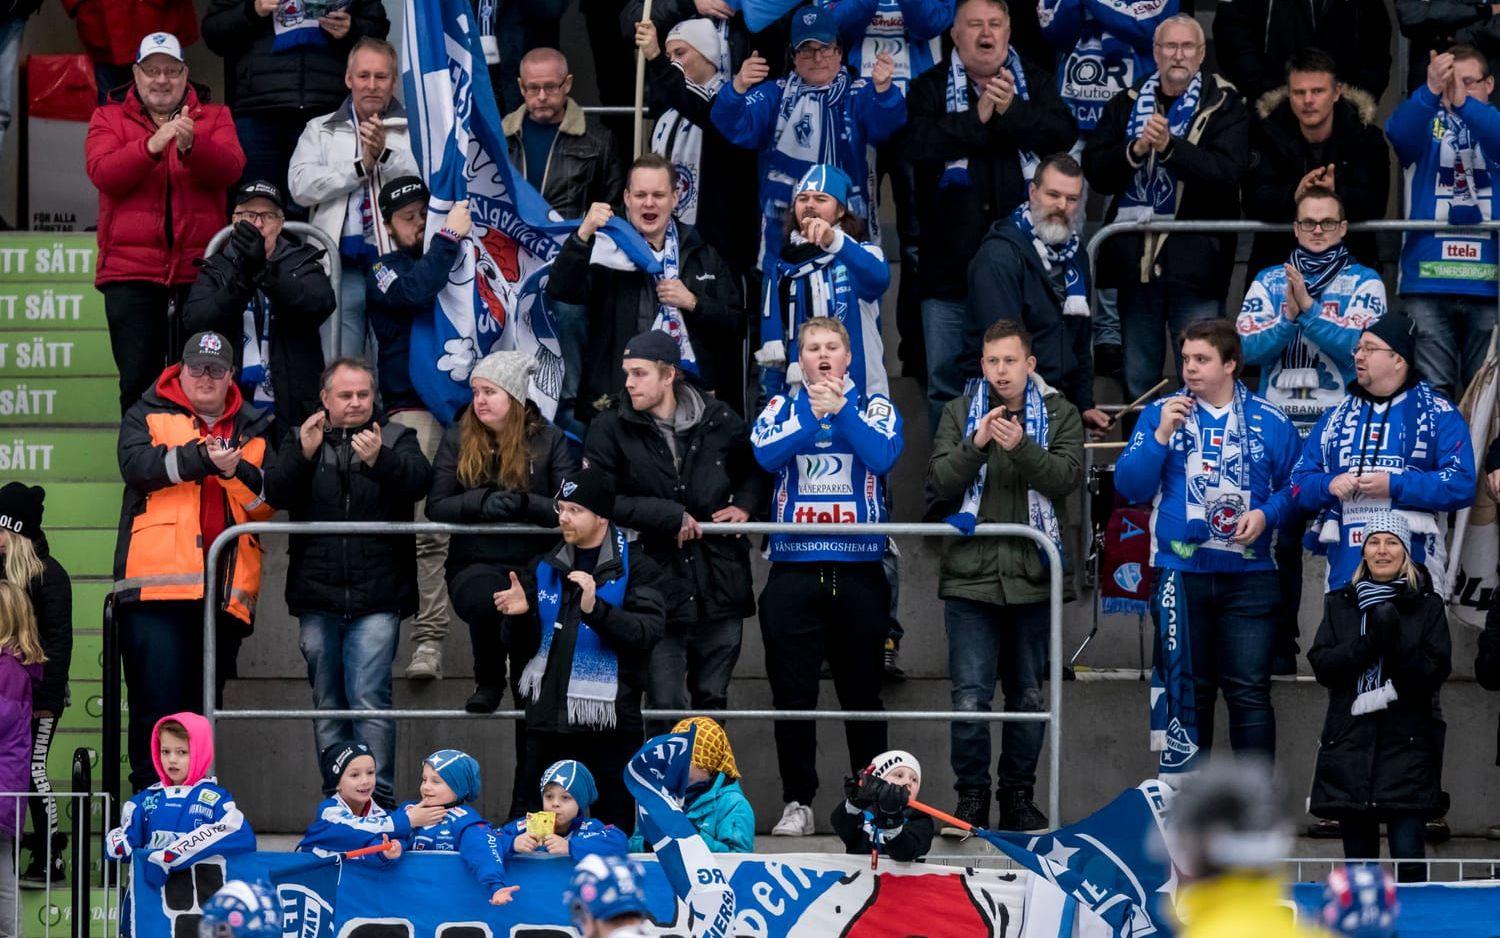 Bild: Sebastian LaMotte. Hemmasupportrarna var naturligtvis lyckliga efter IFK:s storseger.